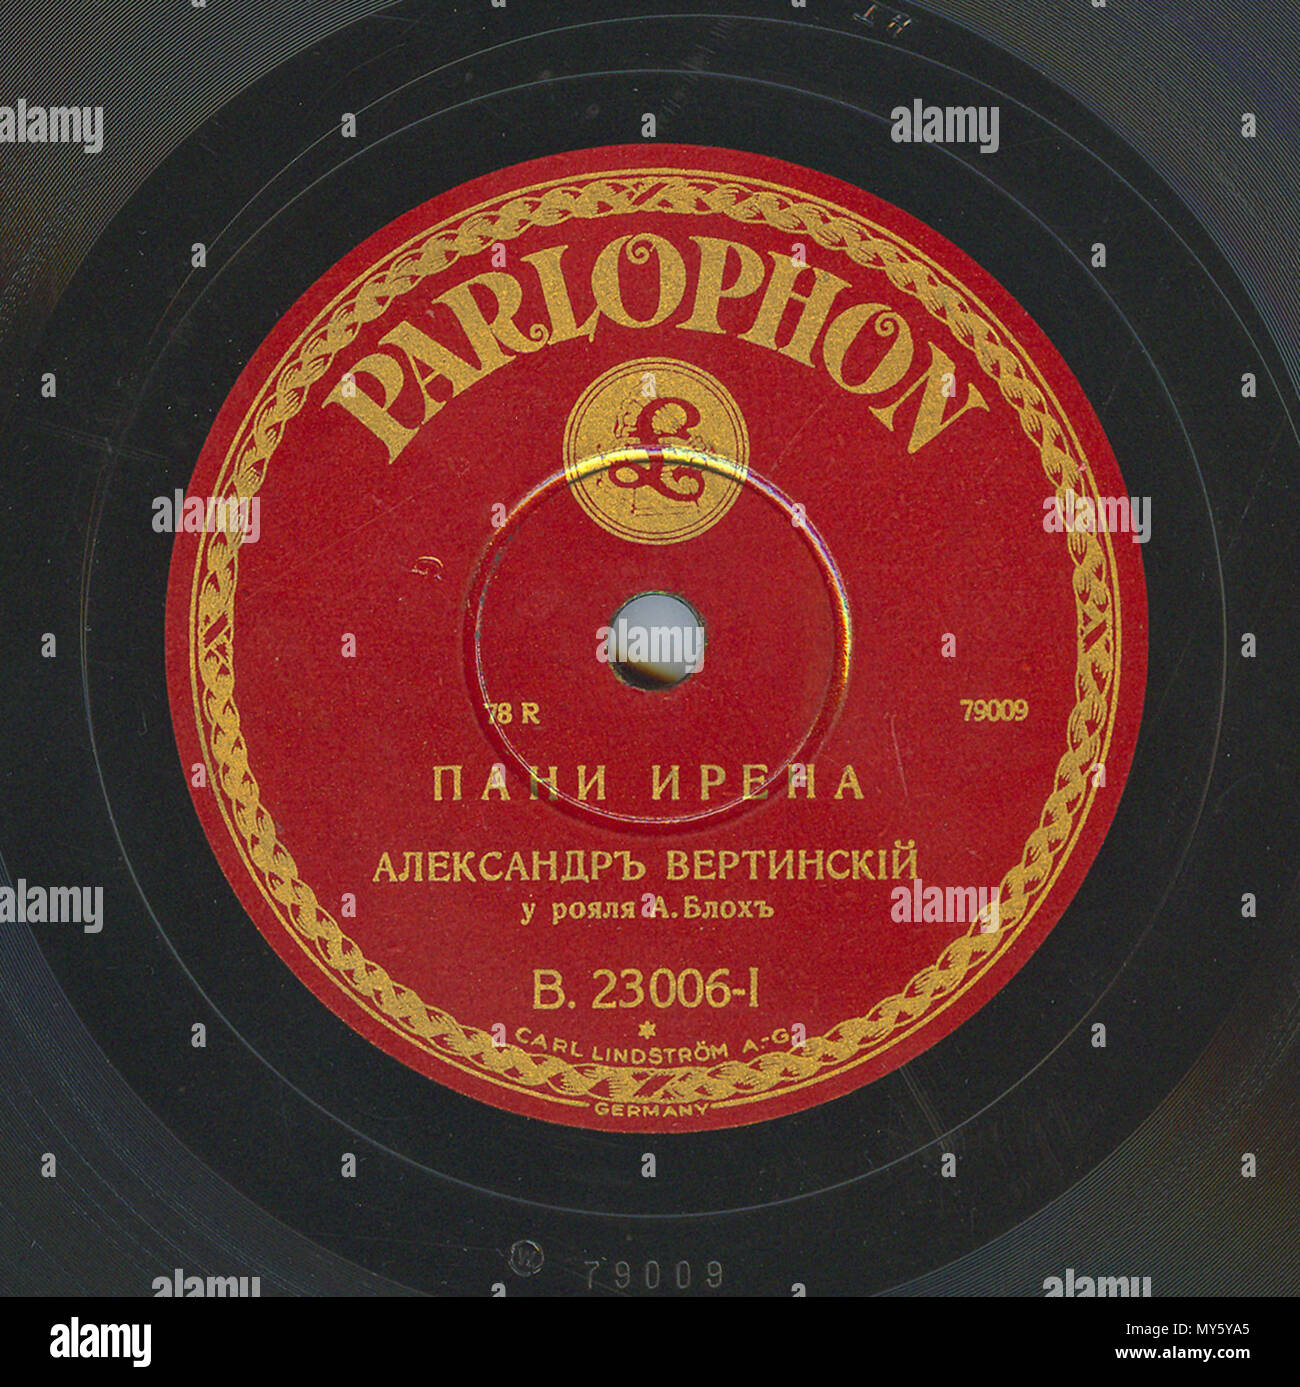 . Englisch: Vertinsky Parlophone B. 23006 01. 6. April 2010, 12:03:29. Parlophone 548 Vertinsky Parlophone B. 23006, 01. Stockfoto